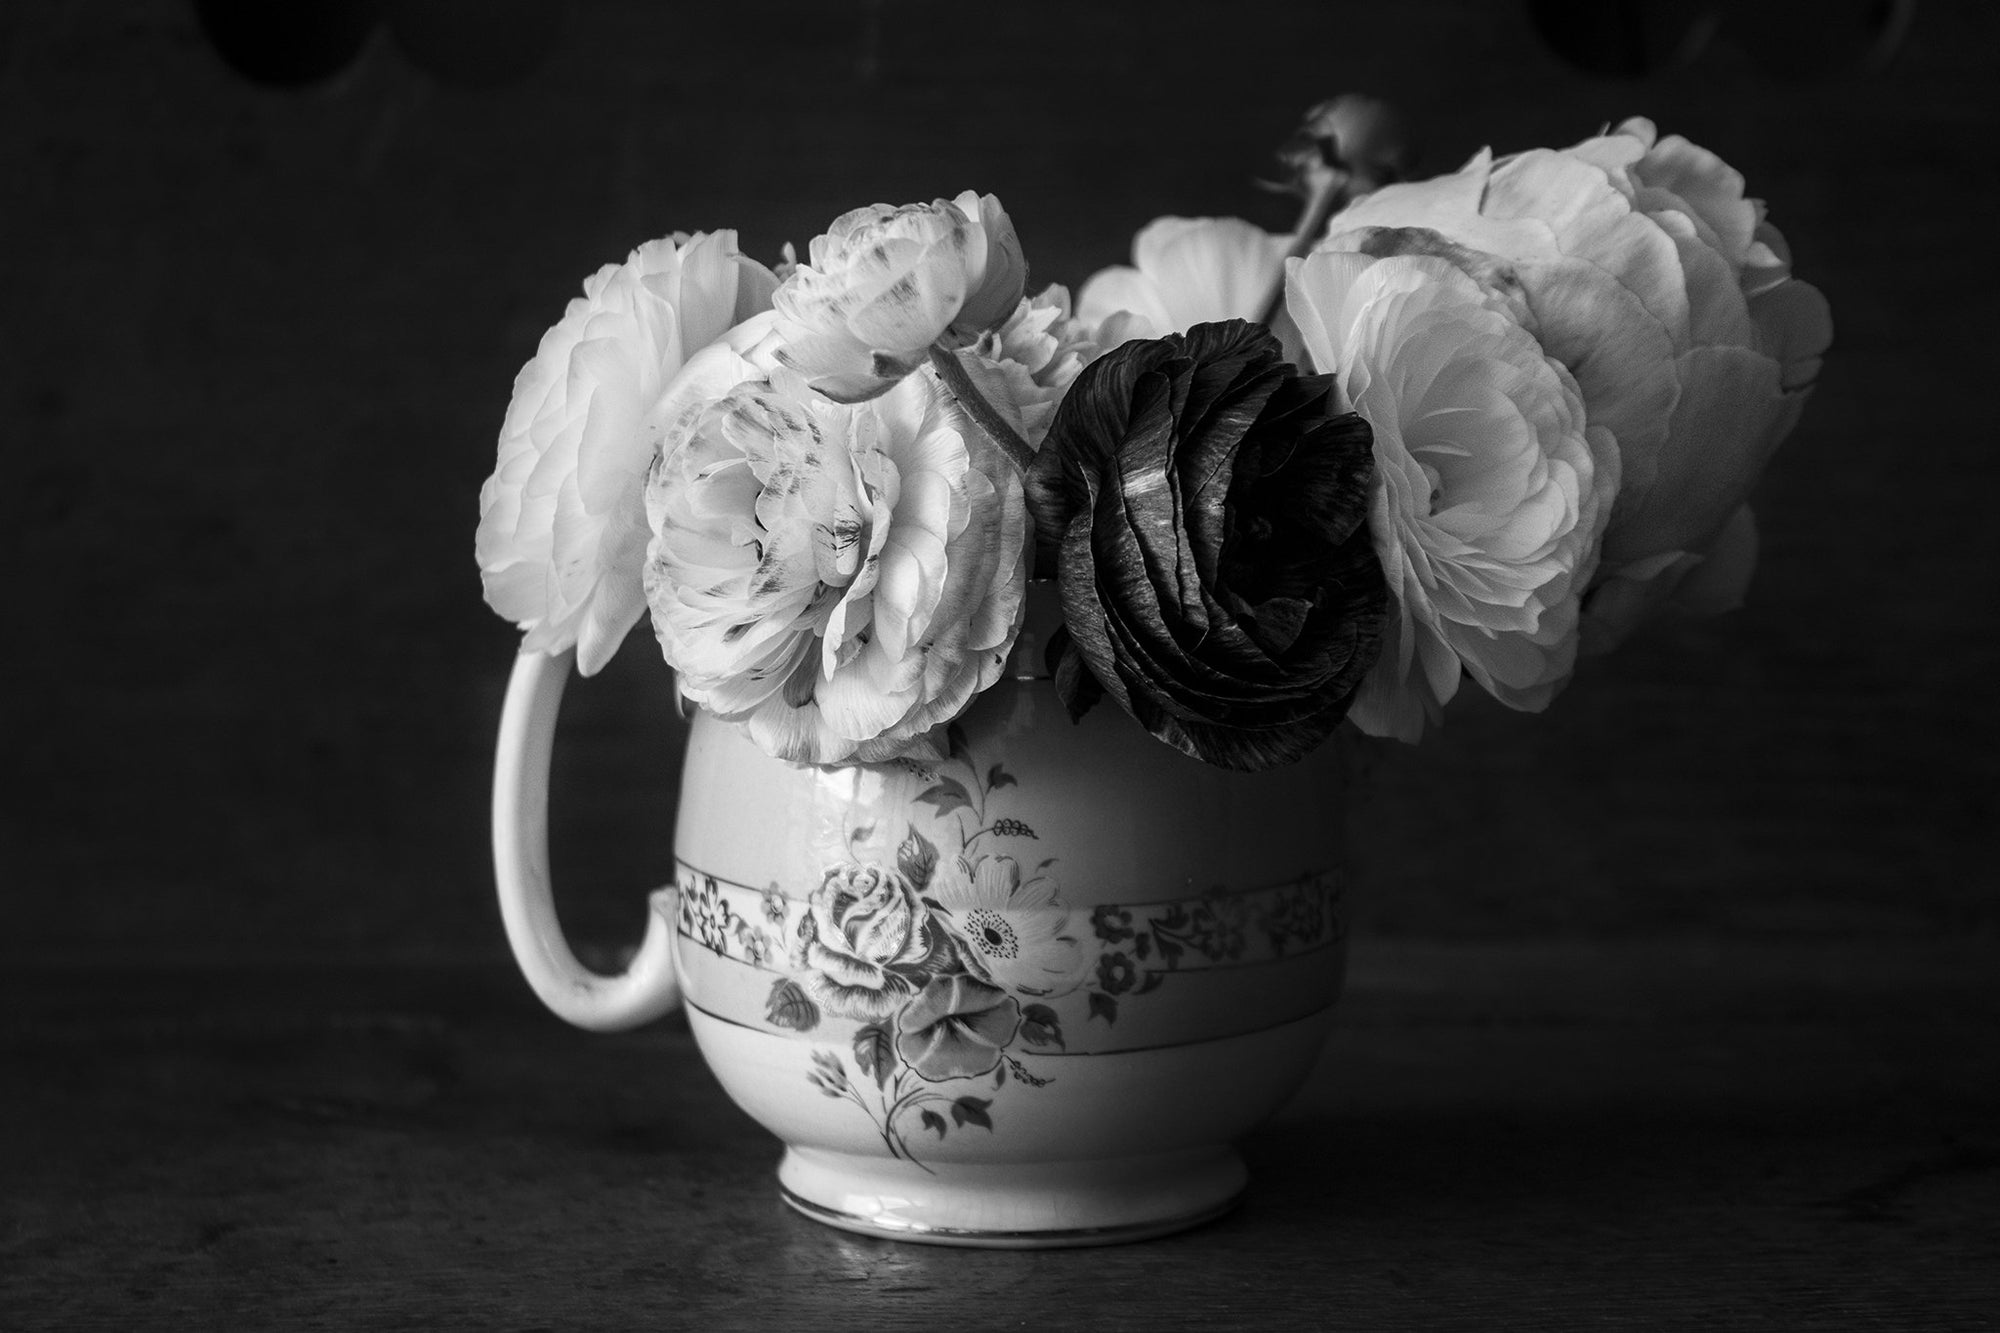 Peonies and Ranunculus flowers in a vintage vase jug in black and white